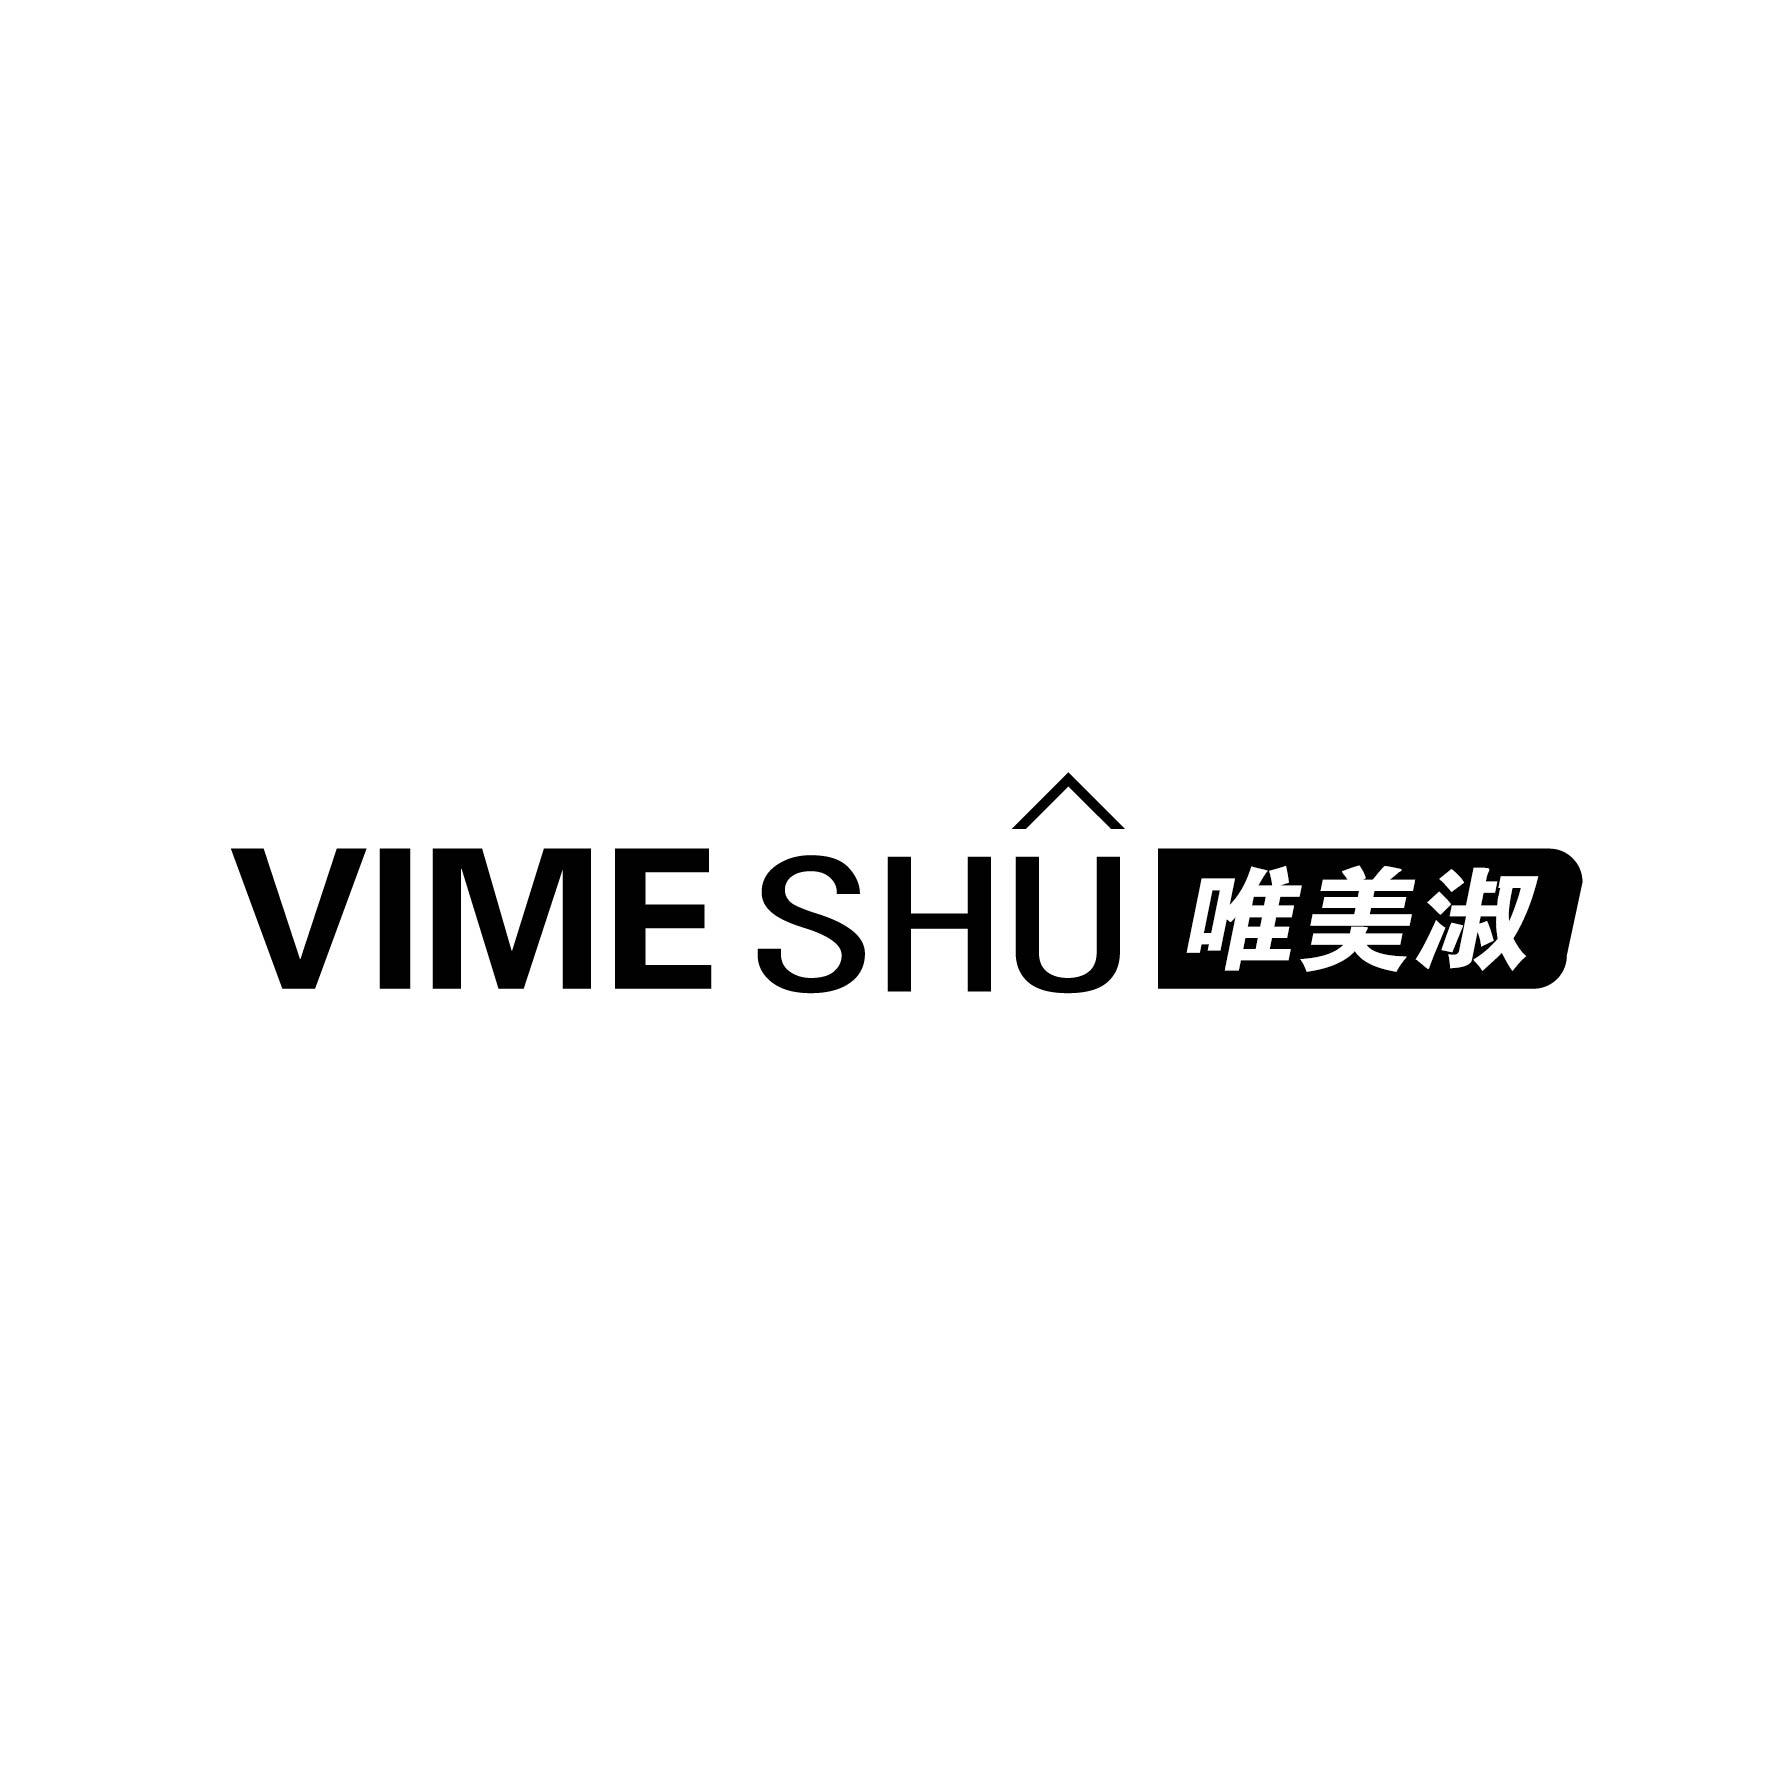 唯美淑 VIME SHU商标图片